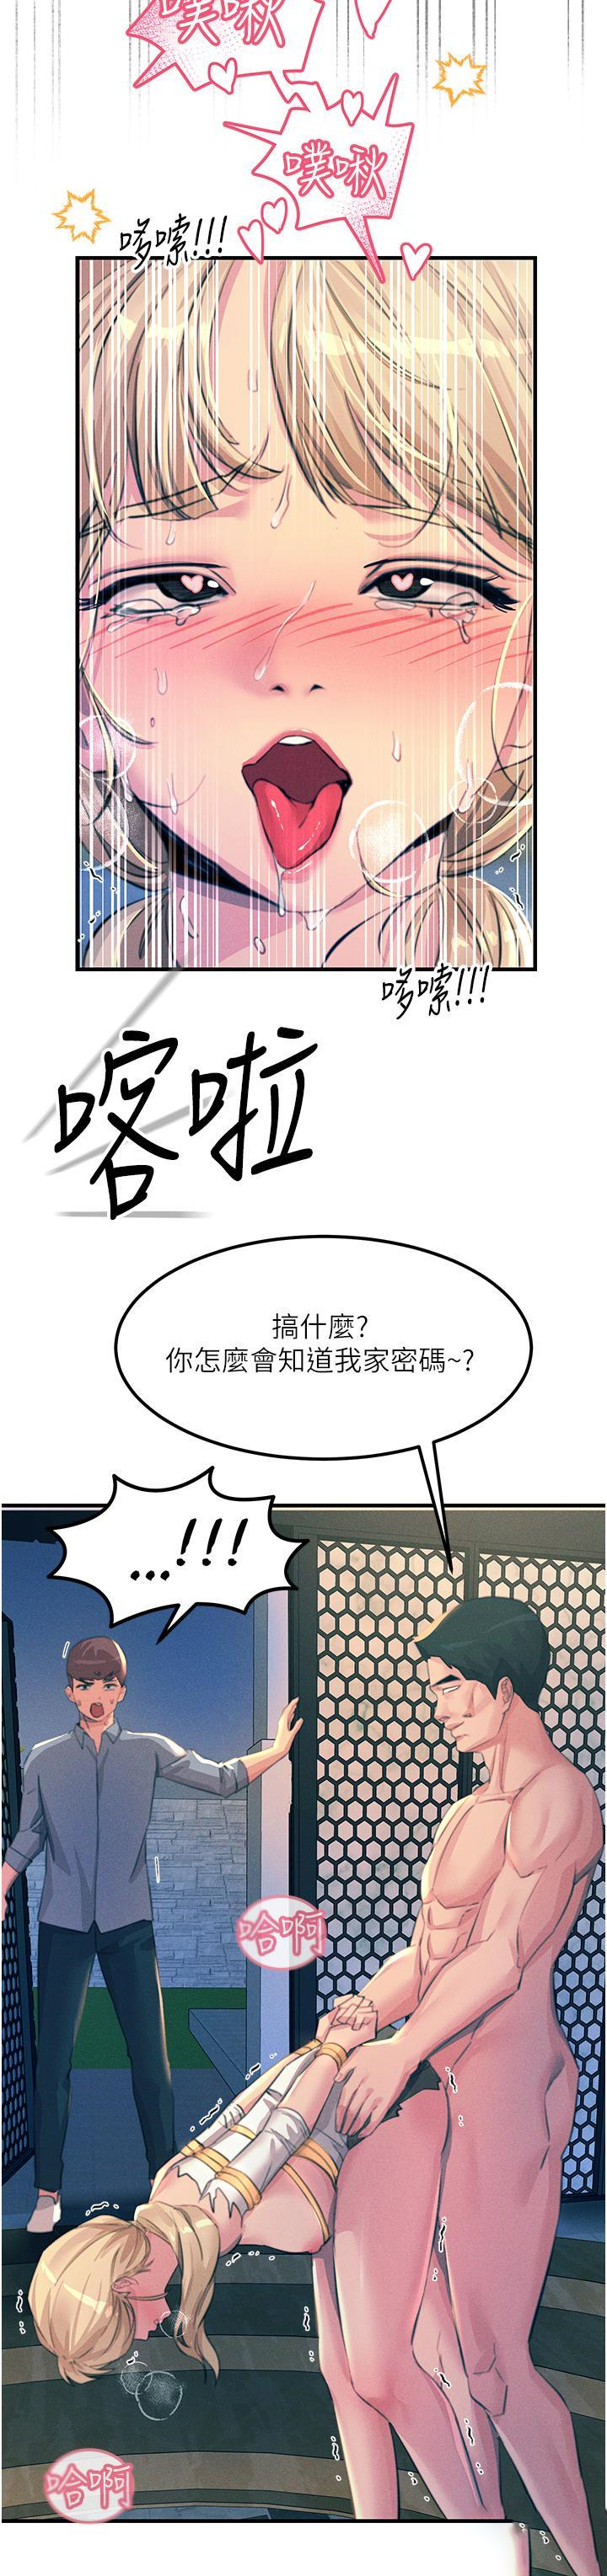 韩国污漫画 觸電大師 第67话 欲女的开苞仪式 20